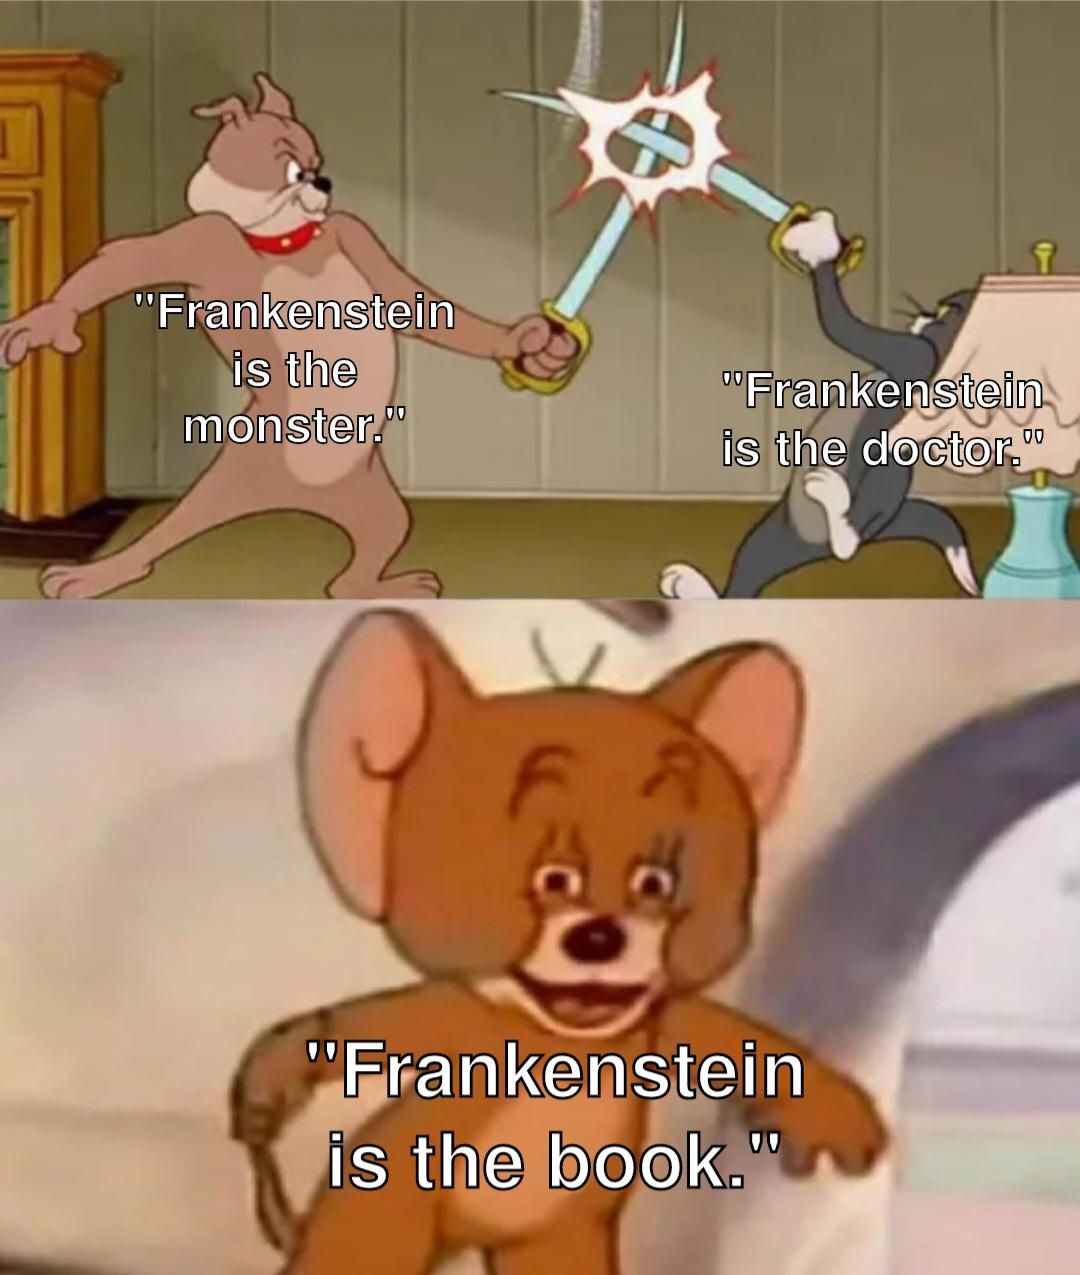 What is Frankenstein